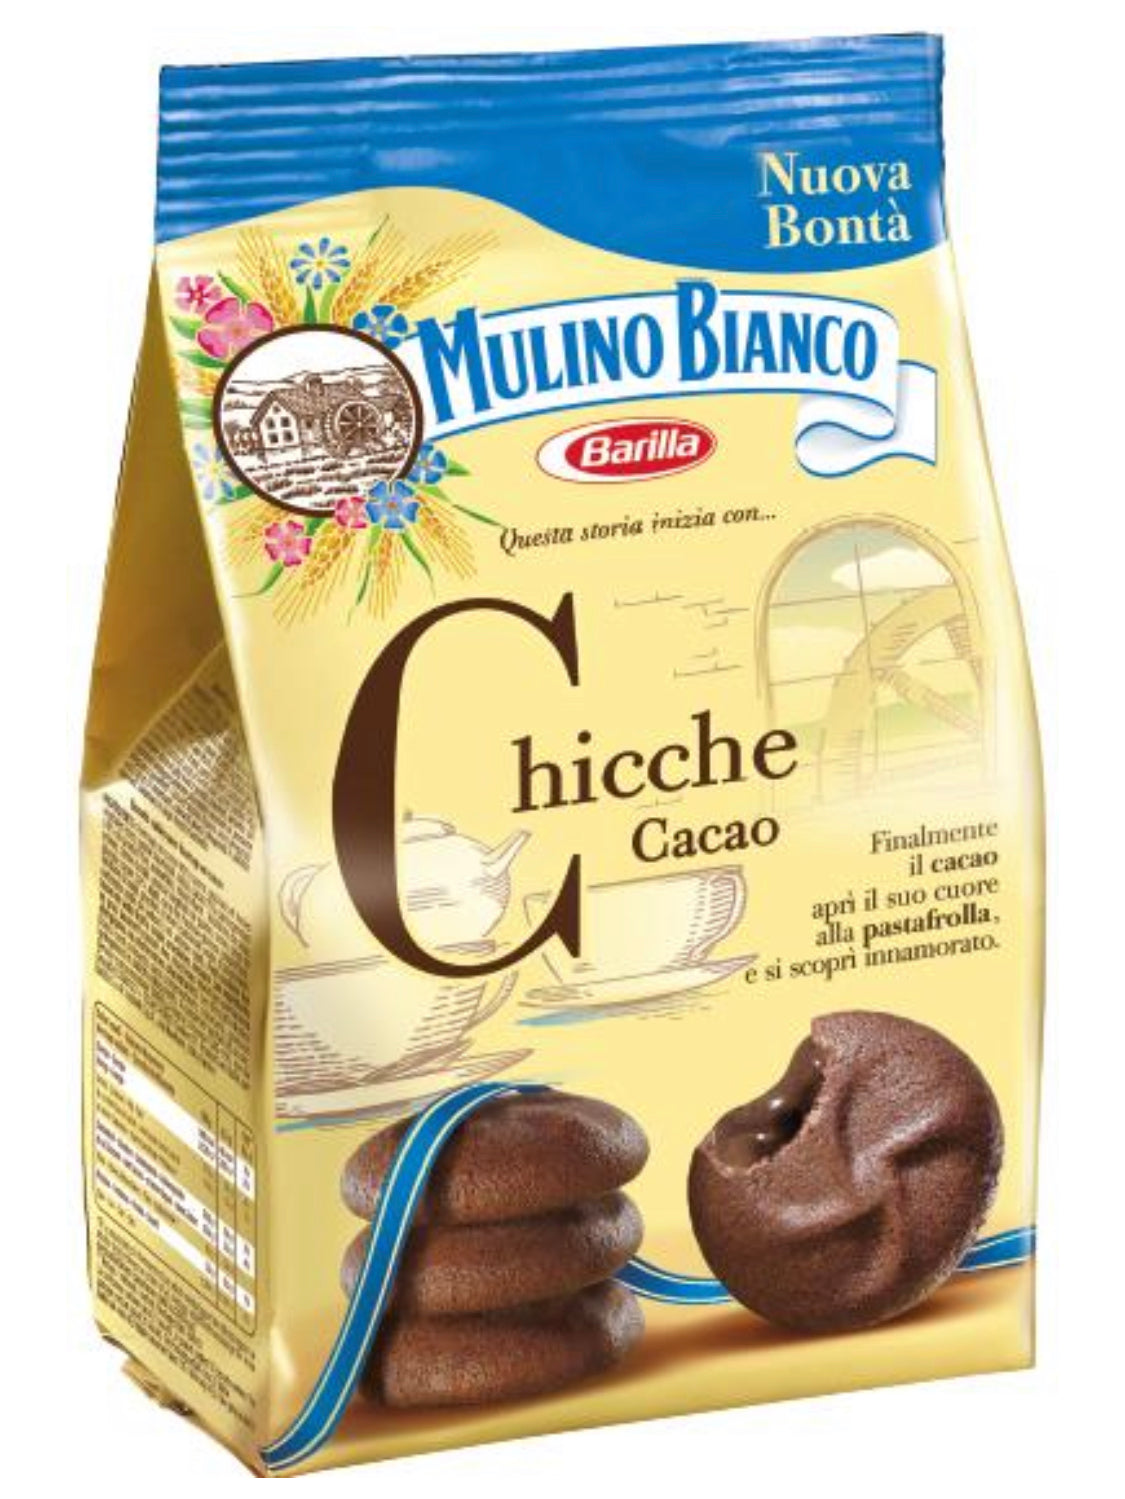 Macine Cookies (350 grams) by Mulino Bianco - 12.3 oz 